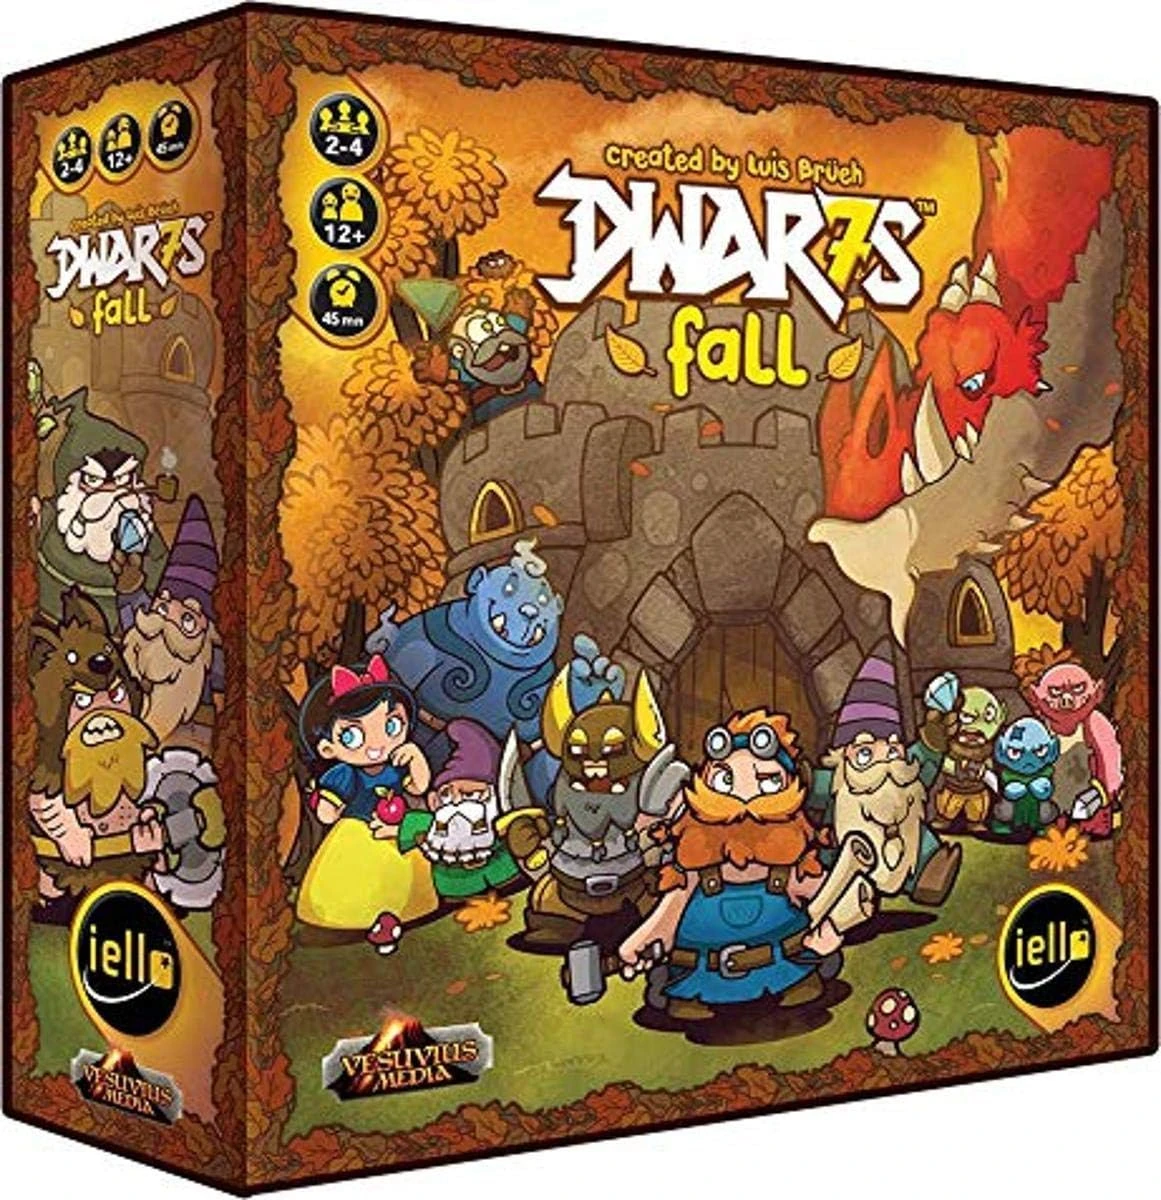 Гномы (Dwar7s Fall 3rd edition) англ. - Настольная игра